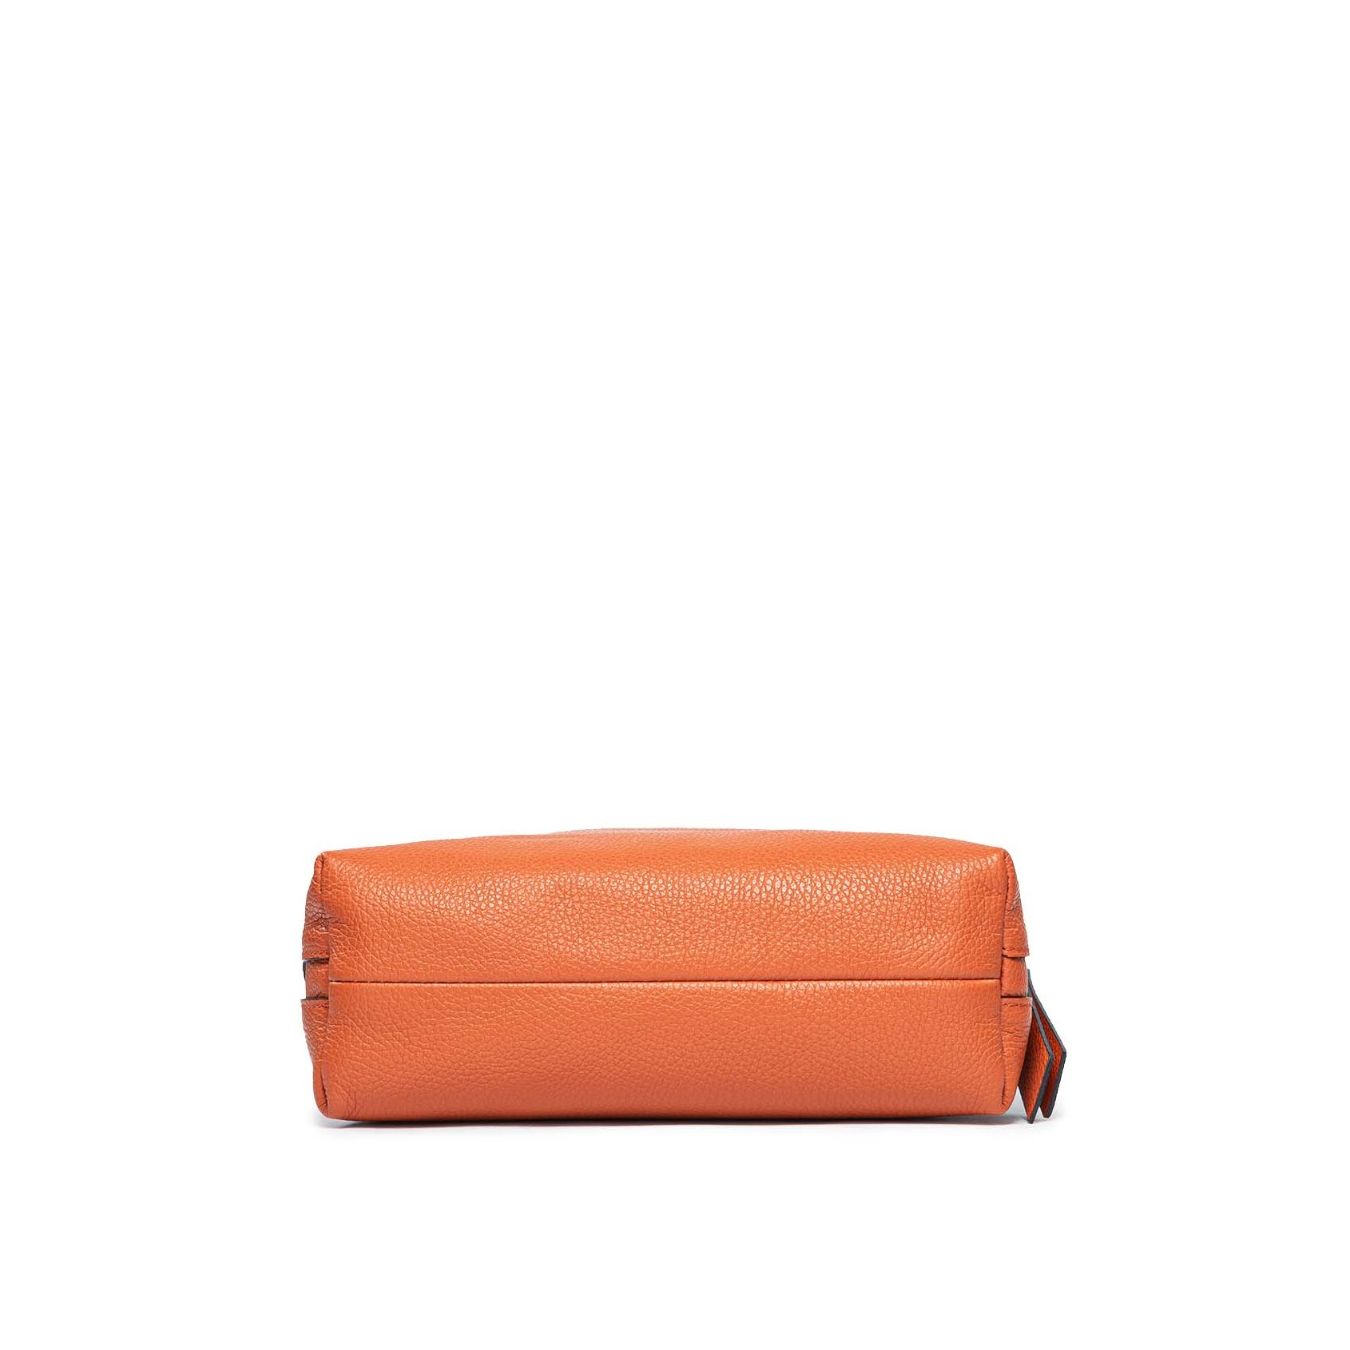 fondo borsa arancione chiarini